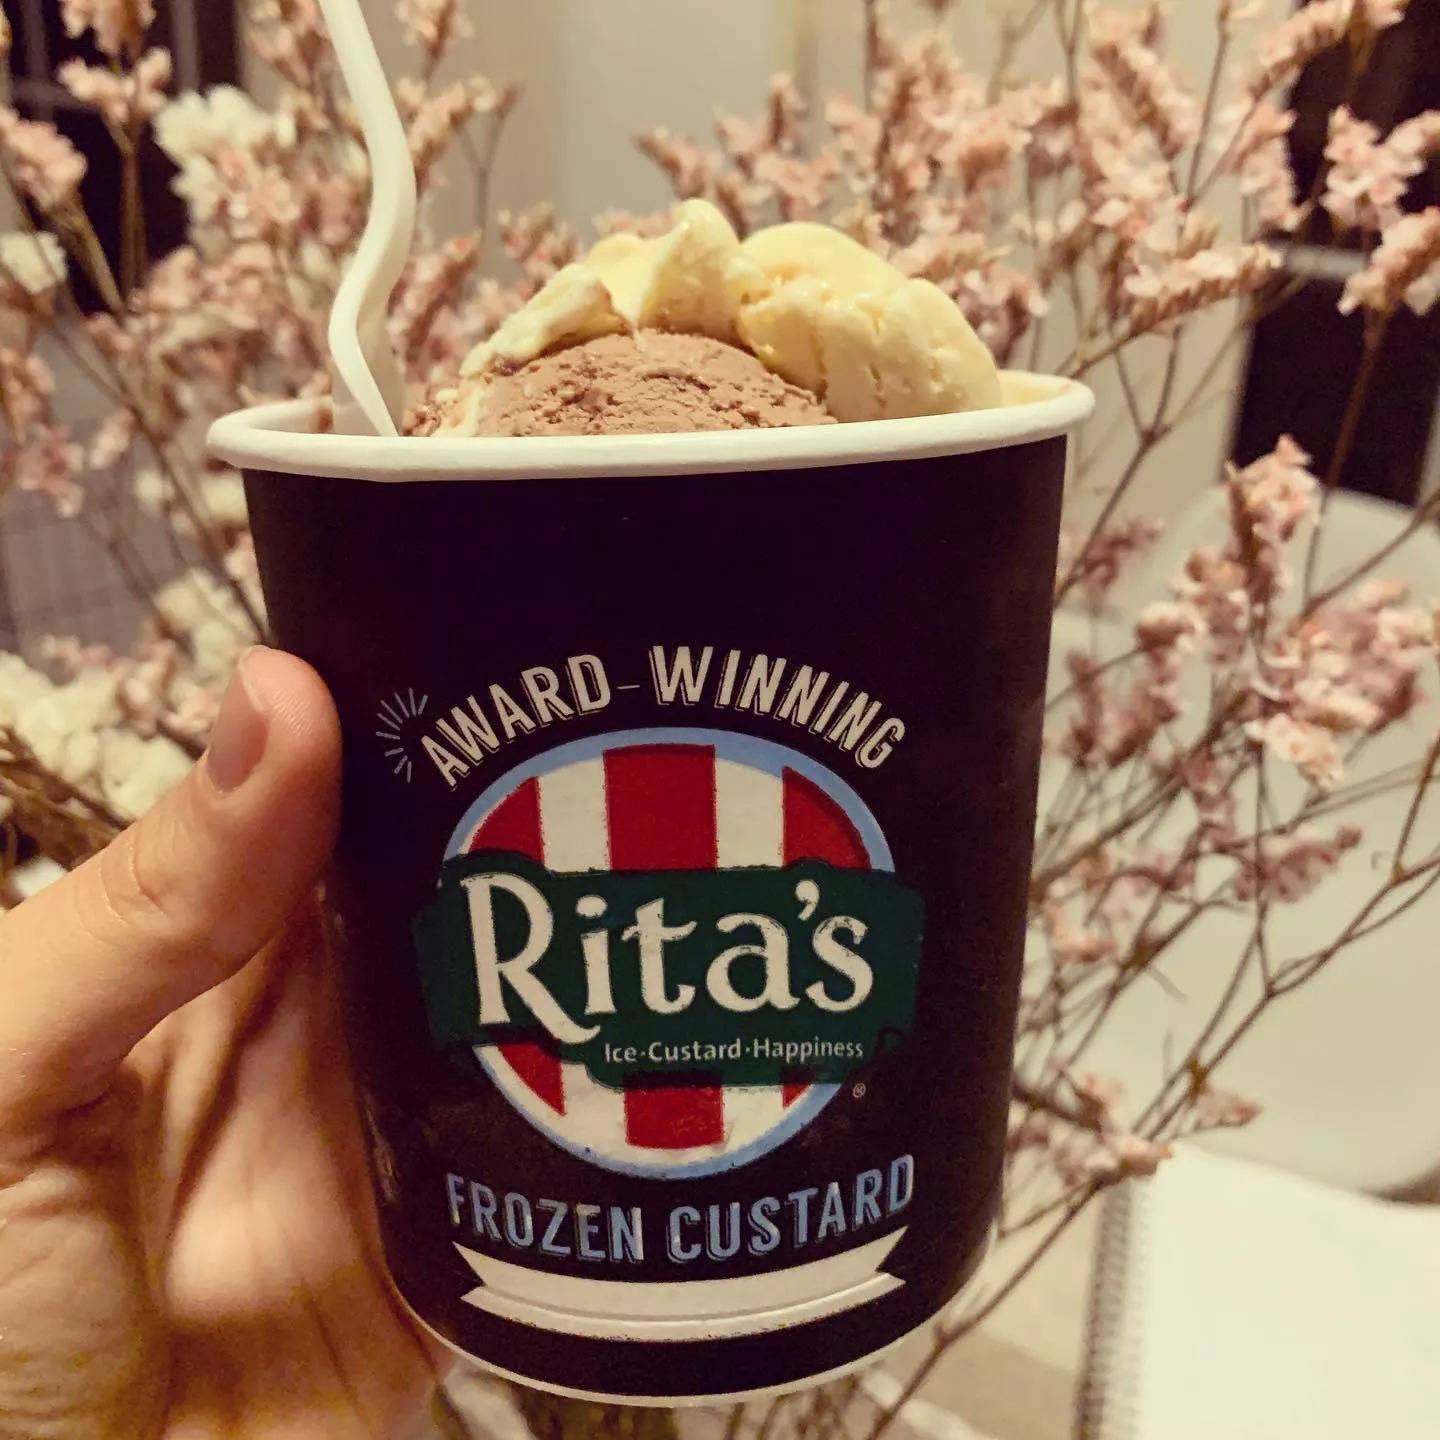 Rita's Italian Ice & Frozen Custard (Palms Blvd, Los Angeles)